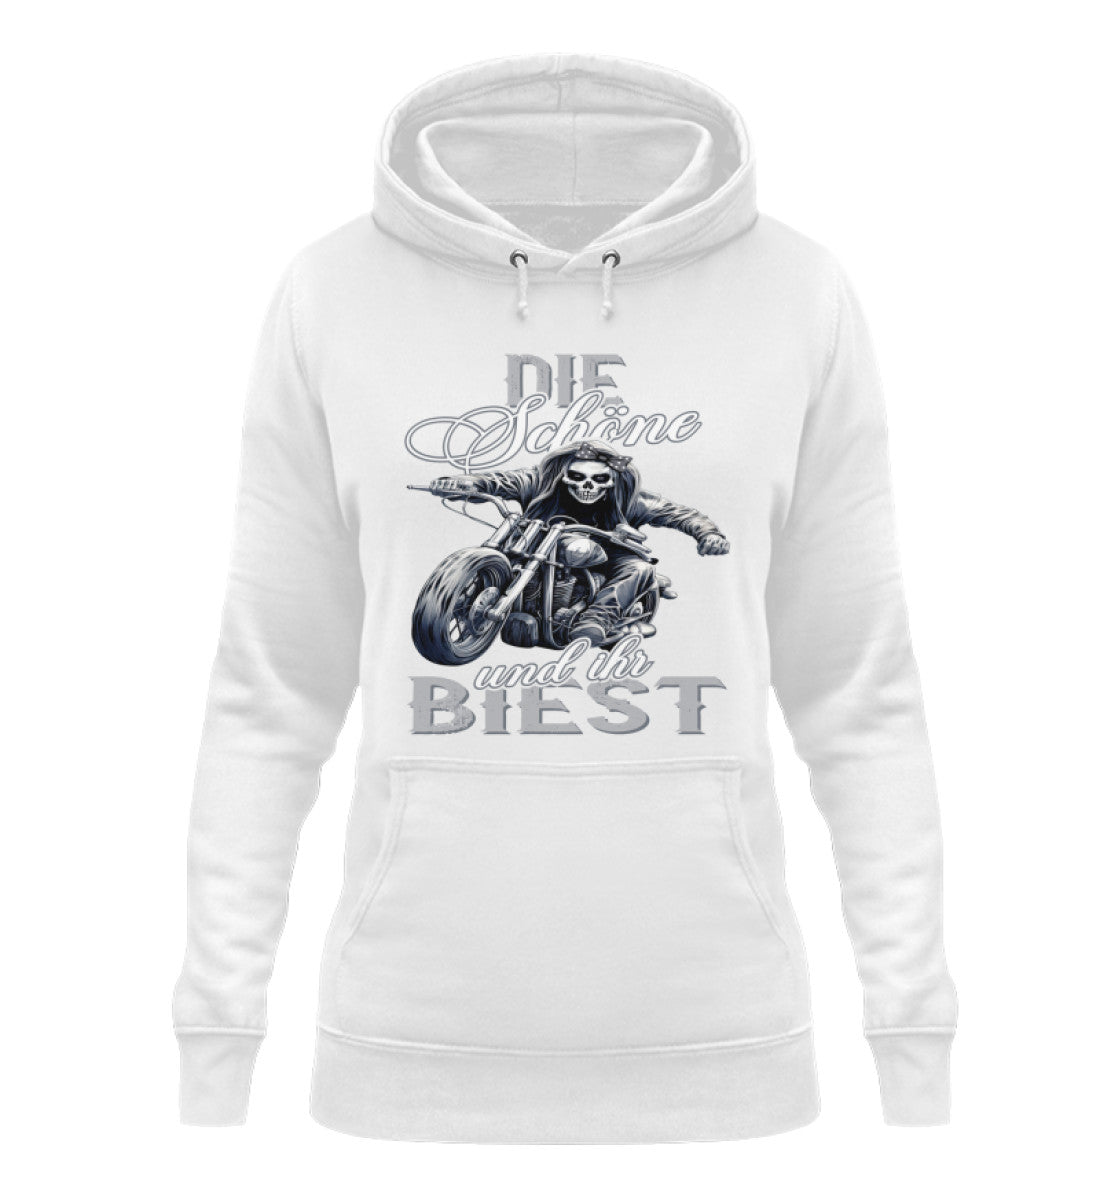 Ein Bikerin Hoodie für Motorradfahrerinnen von Wingbikers mit dem Aufdruck, Die Schöne und ihr Biest - in weiß.